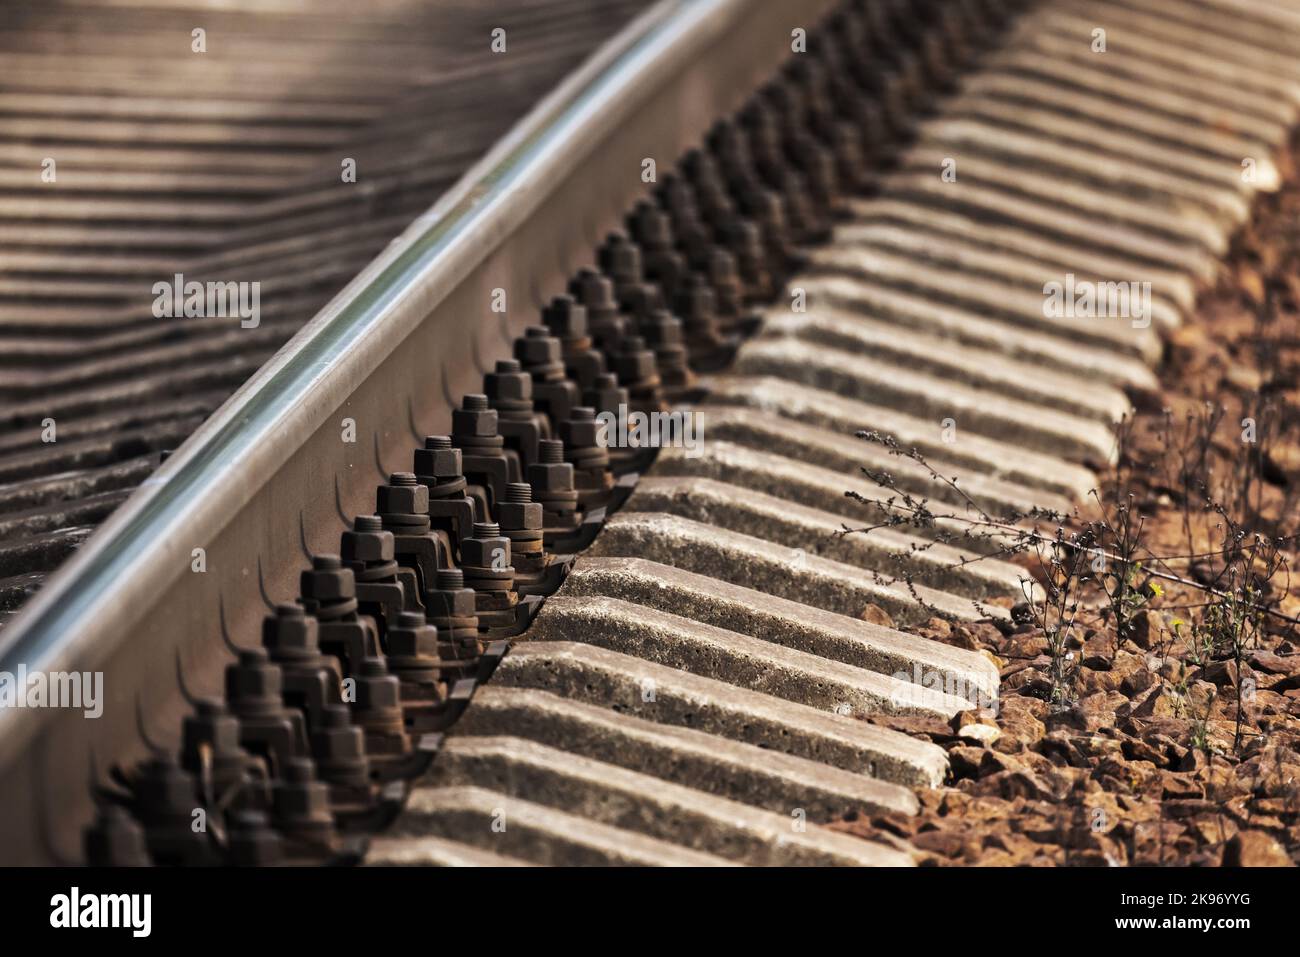 Dettagli binari ferroviari, foto astratta industriale con messa a fuoco selettiva Foto Stock